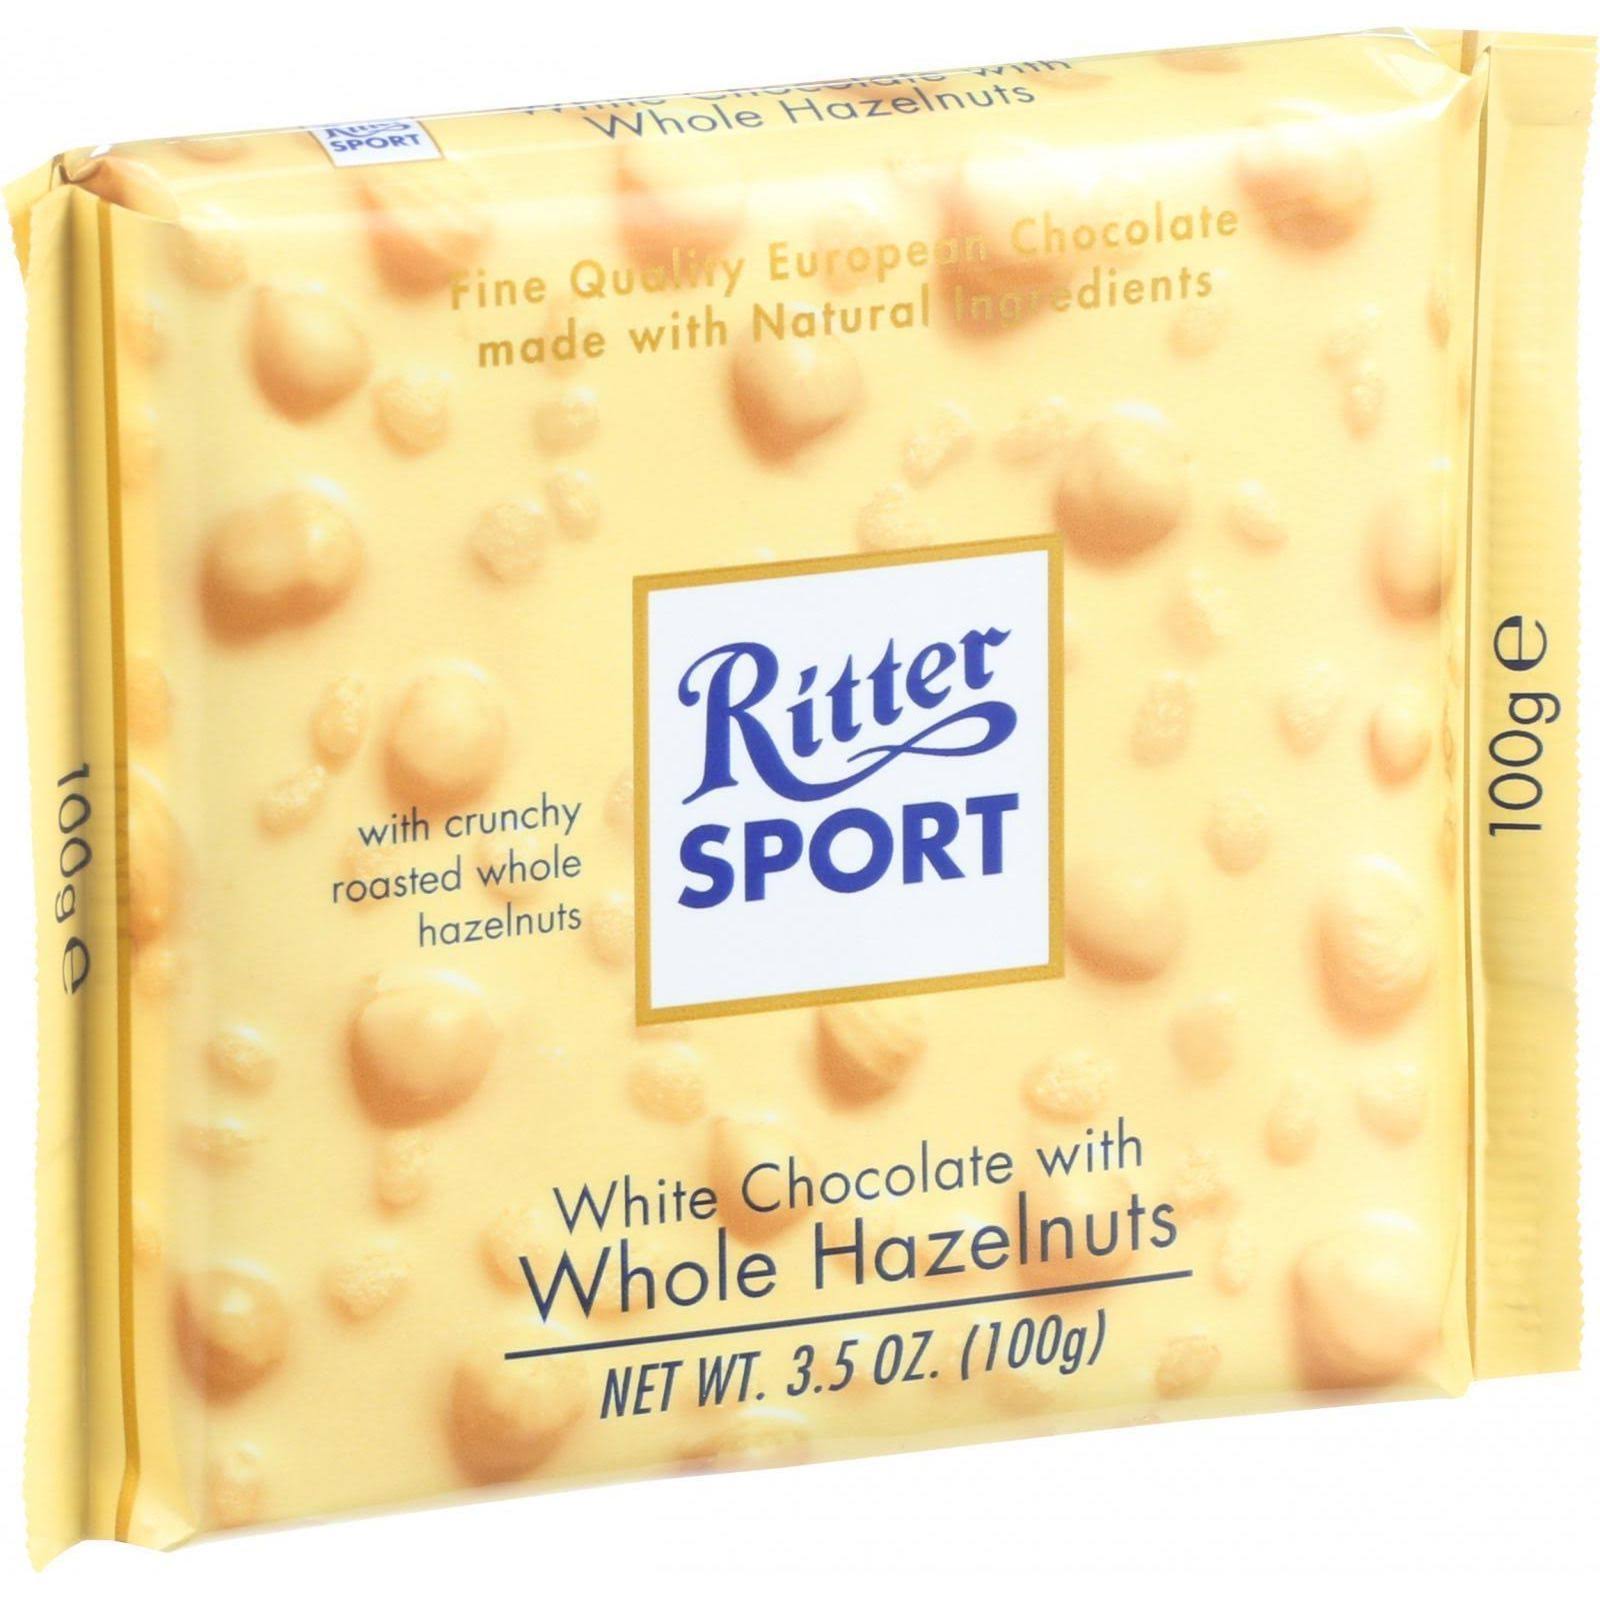 Ritter Sport White Chocolate Bar - Whole Hazelnuts, 100g